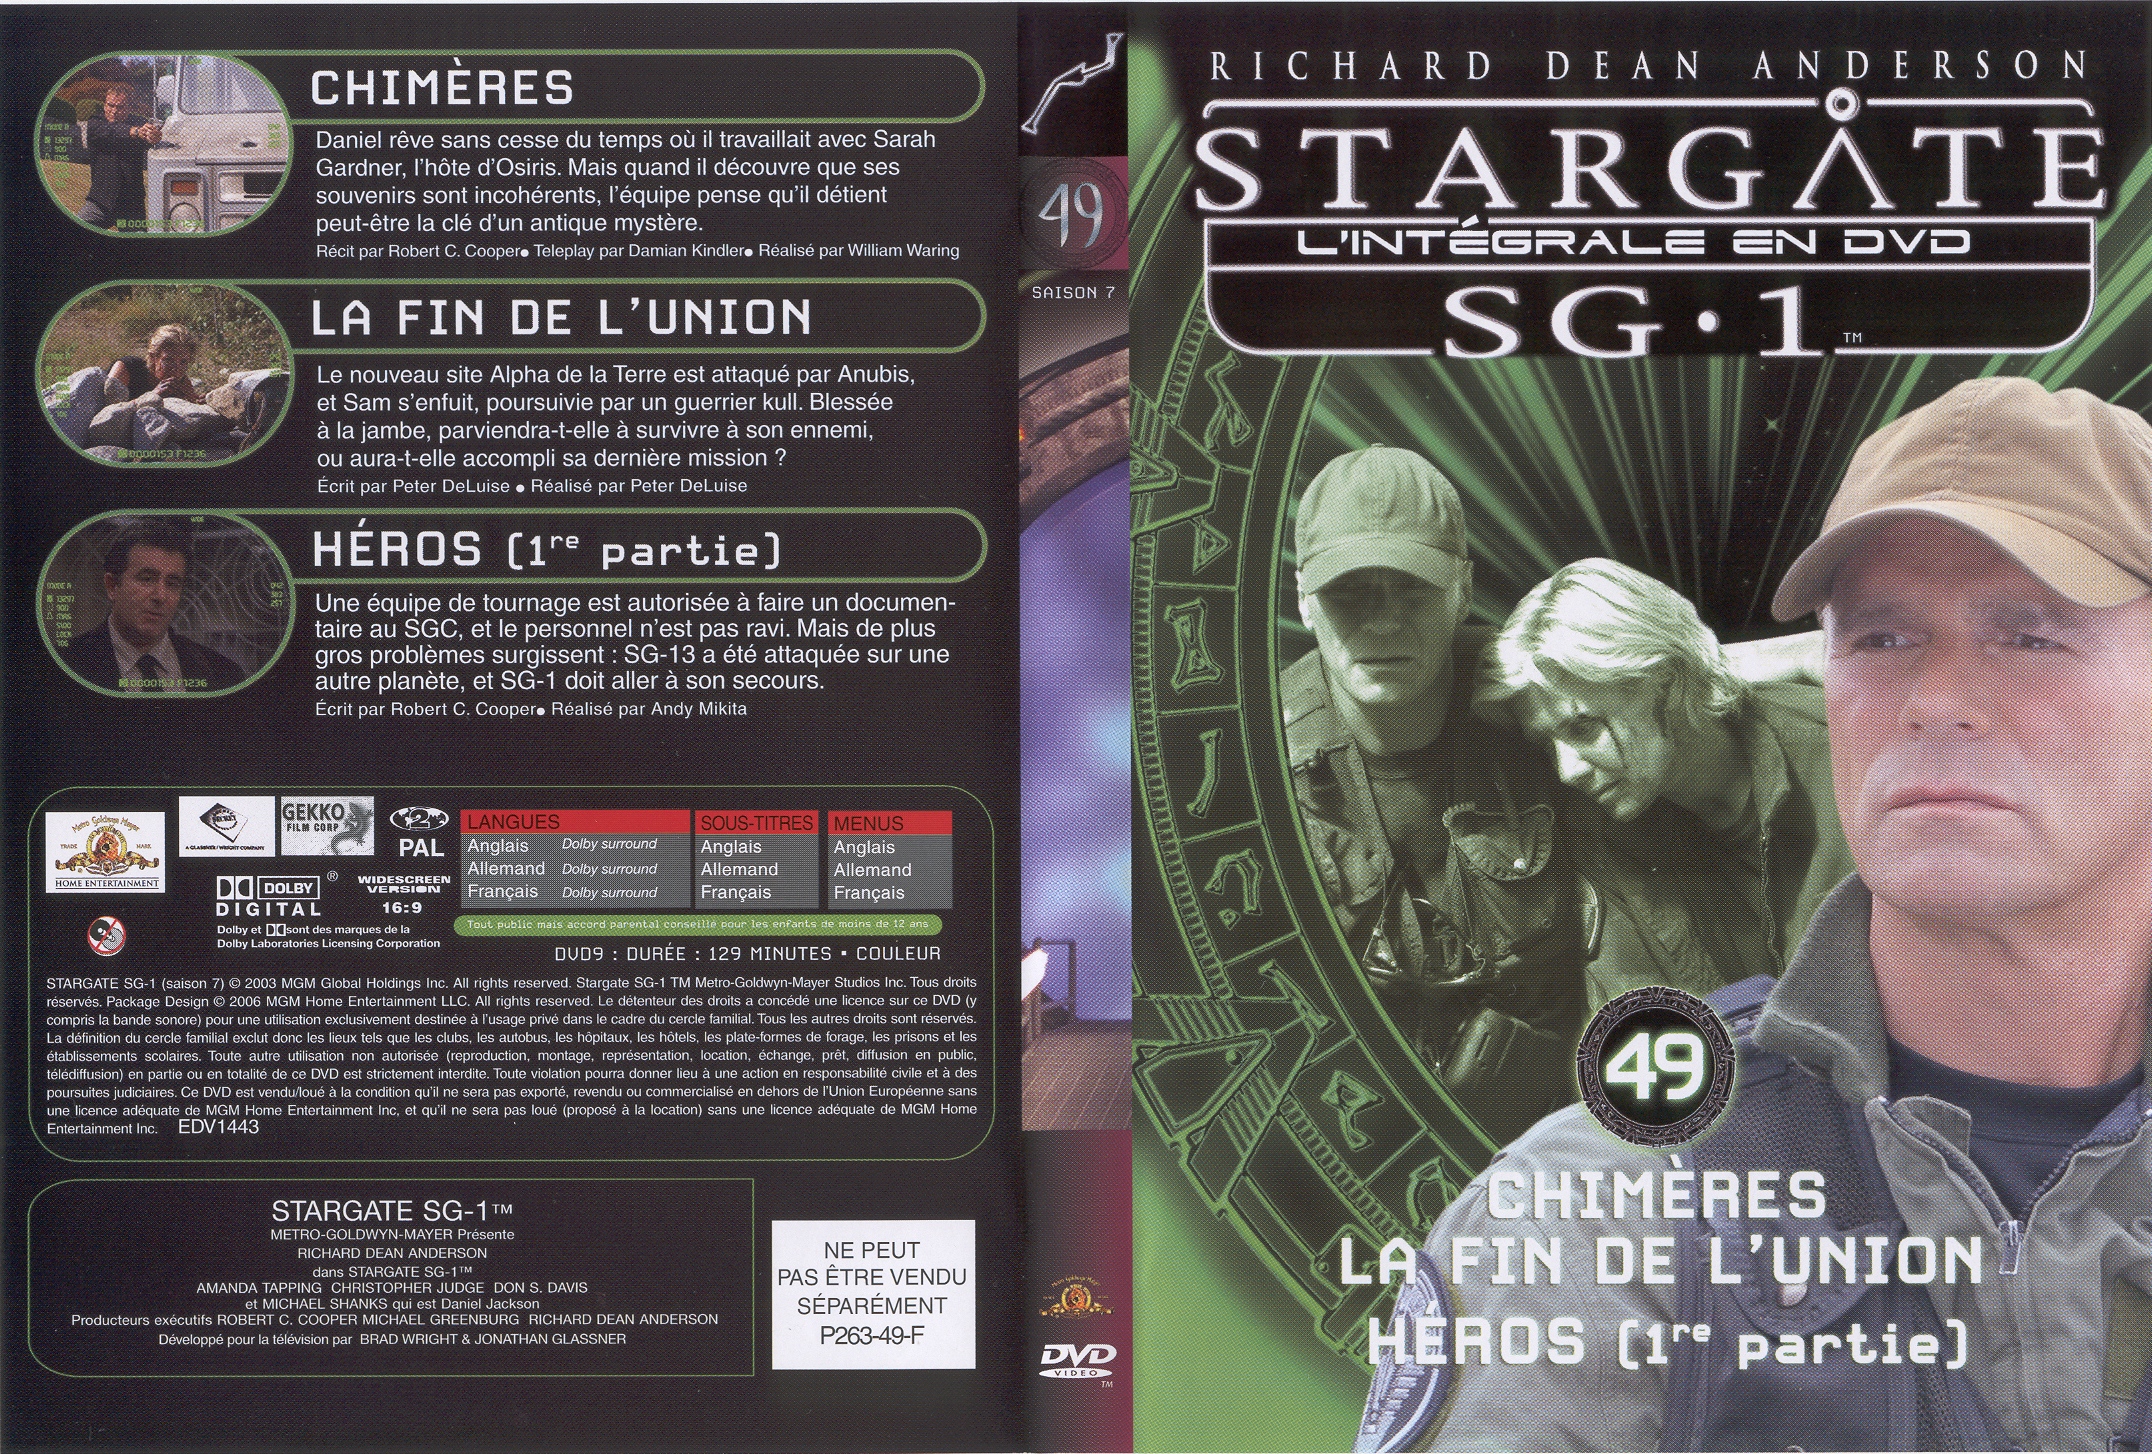 Jaquette DVD Stargate saison 7 vol 49